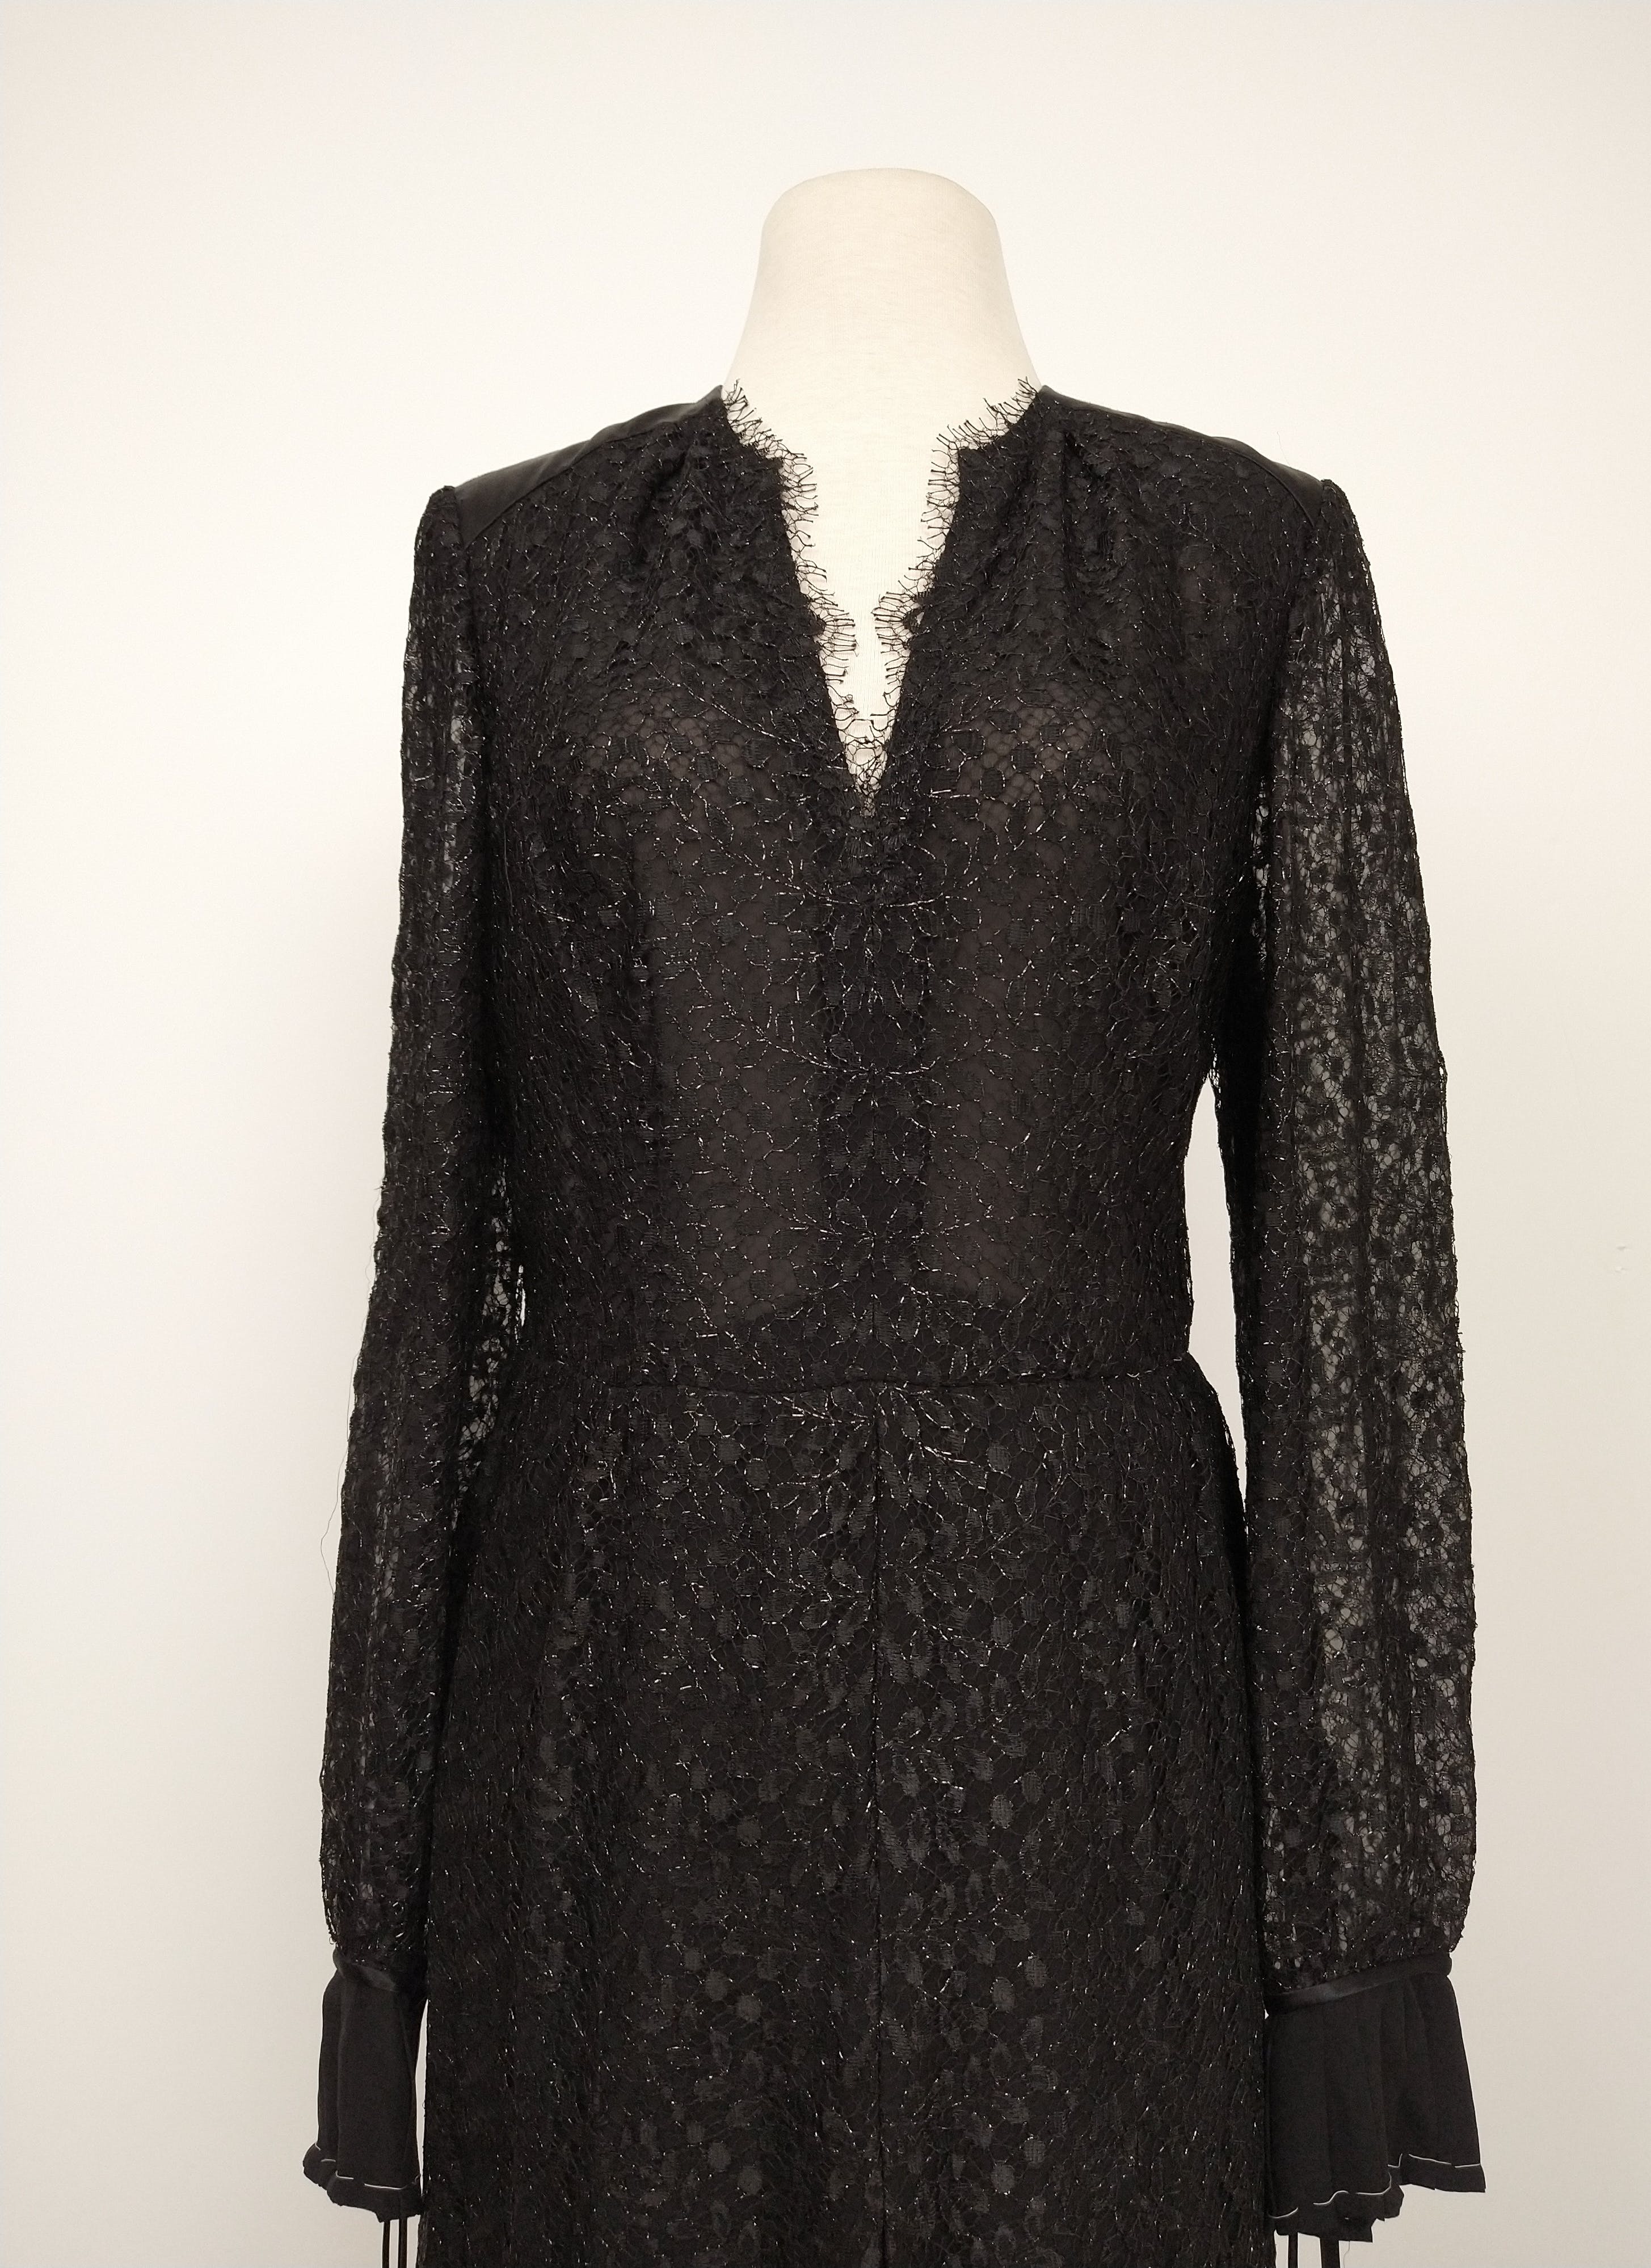 Vintage Italian Black Lace Sheer Metallic Gown by Mirella Carvorso ...